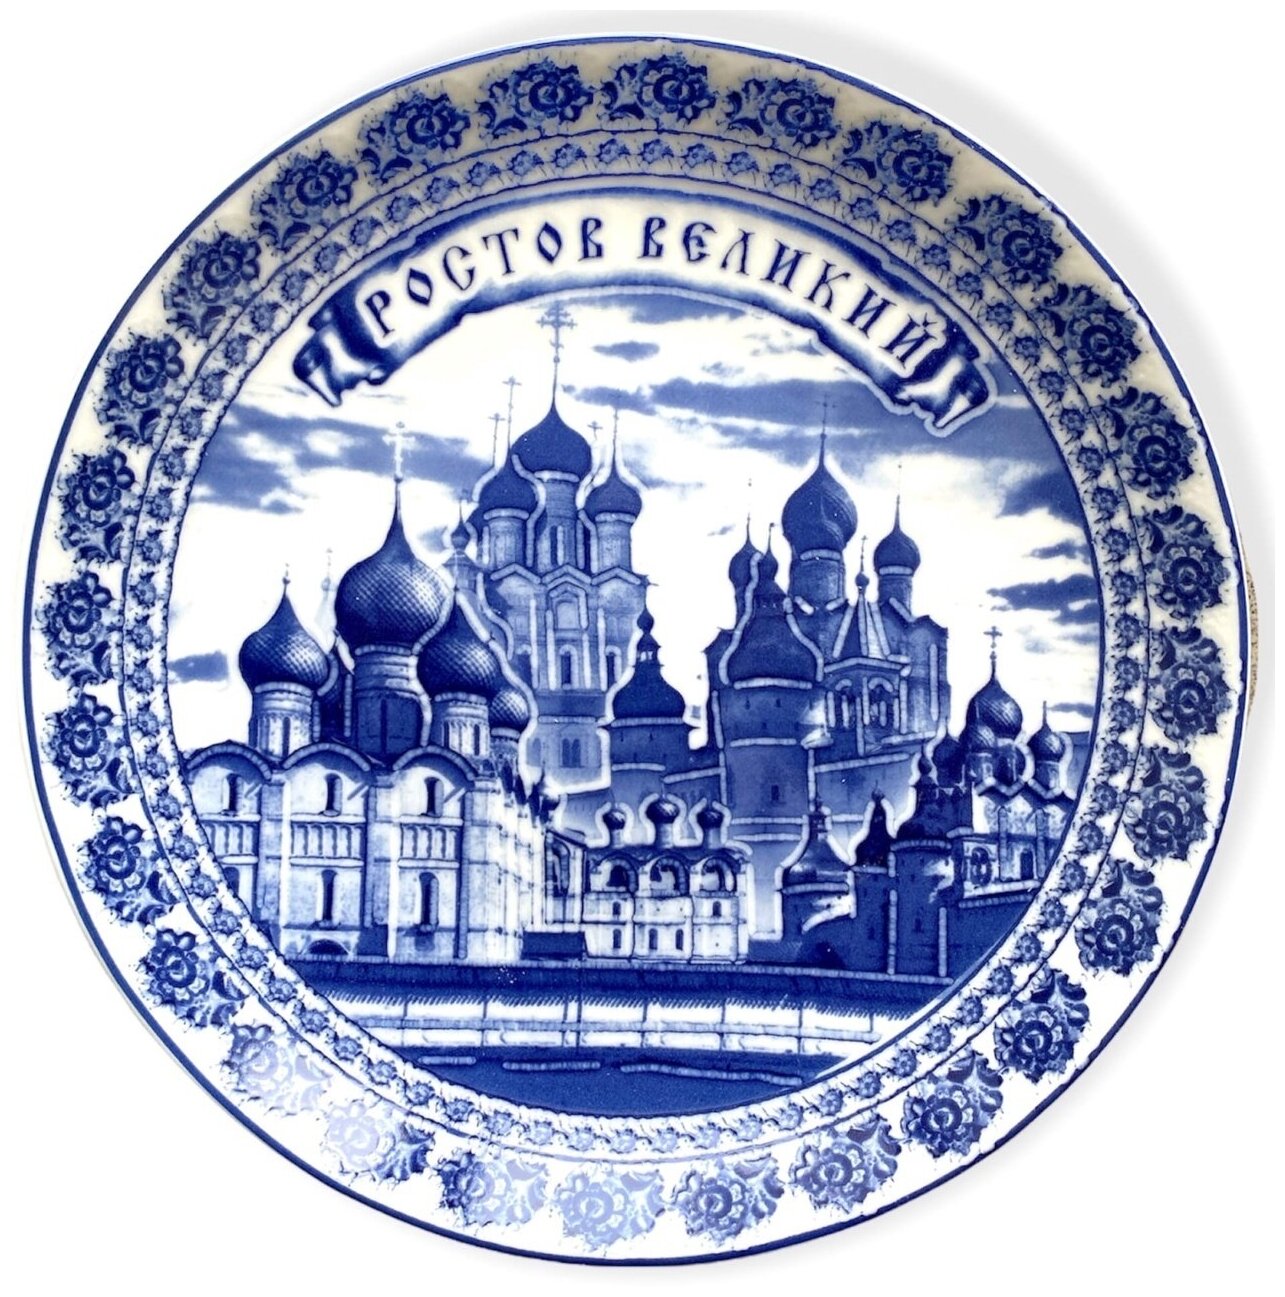 Сувенирная тарелка на подставке Ростов Великий 20 см гжель VITtovar